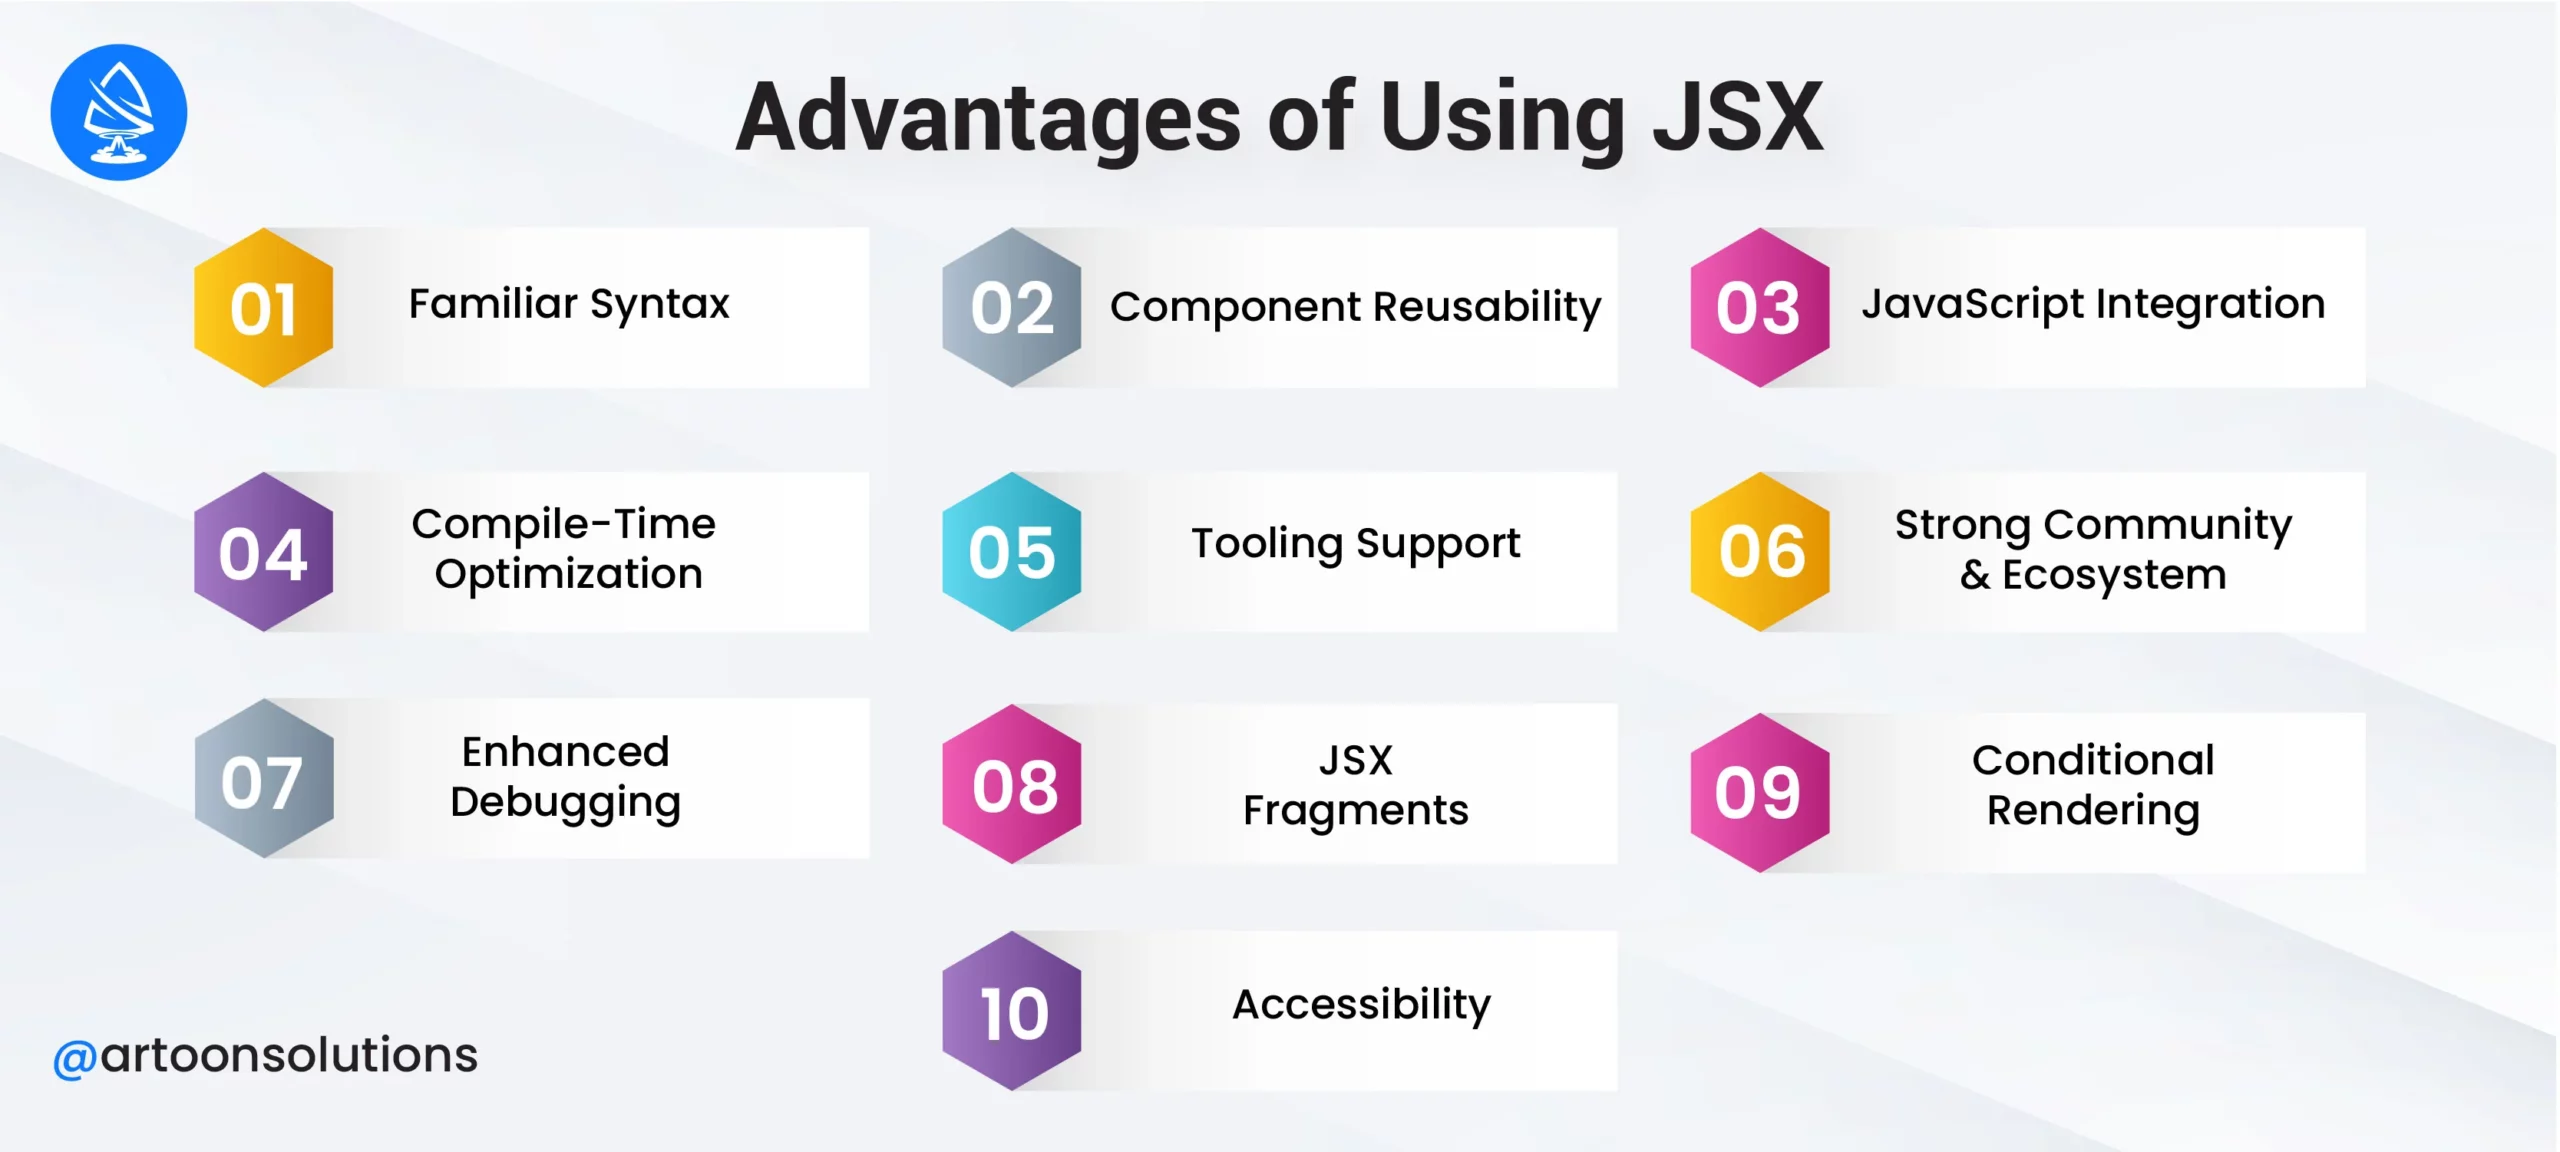 Advantages of Using JSX